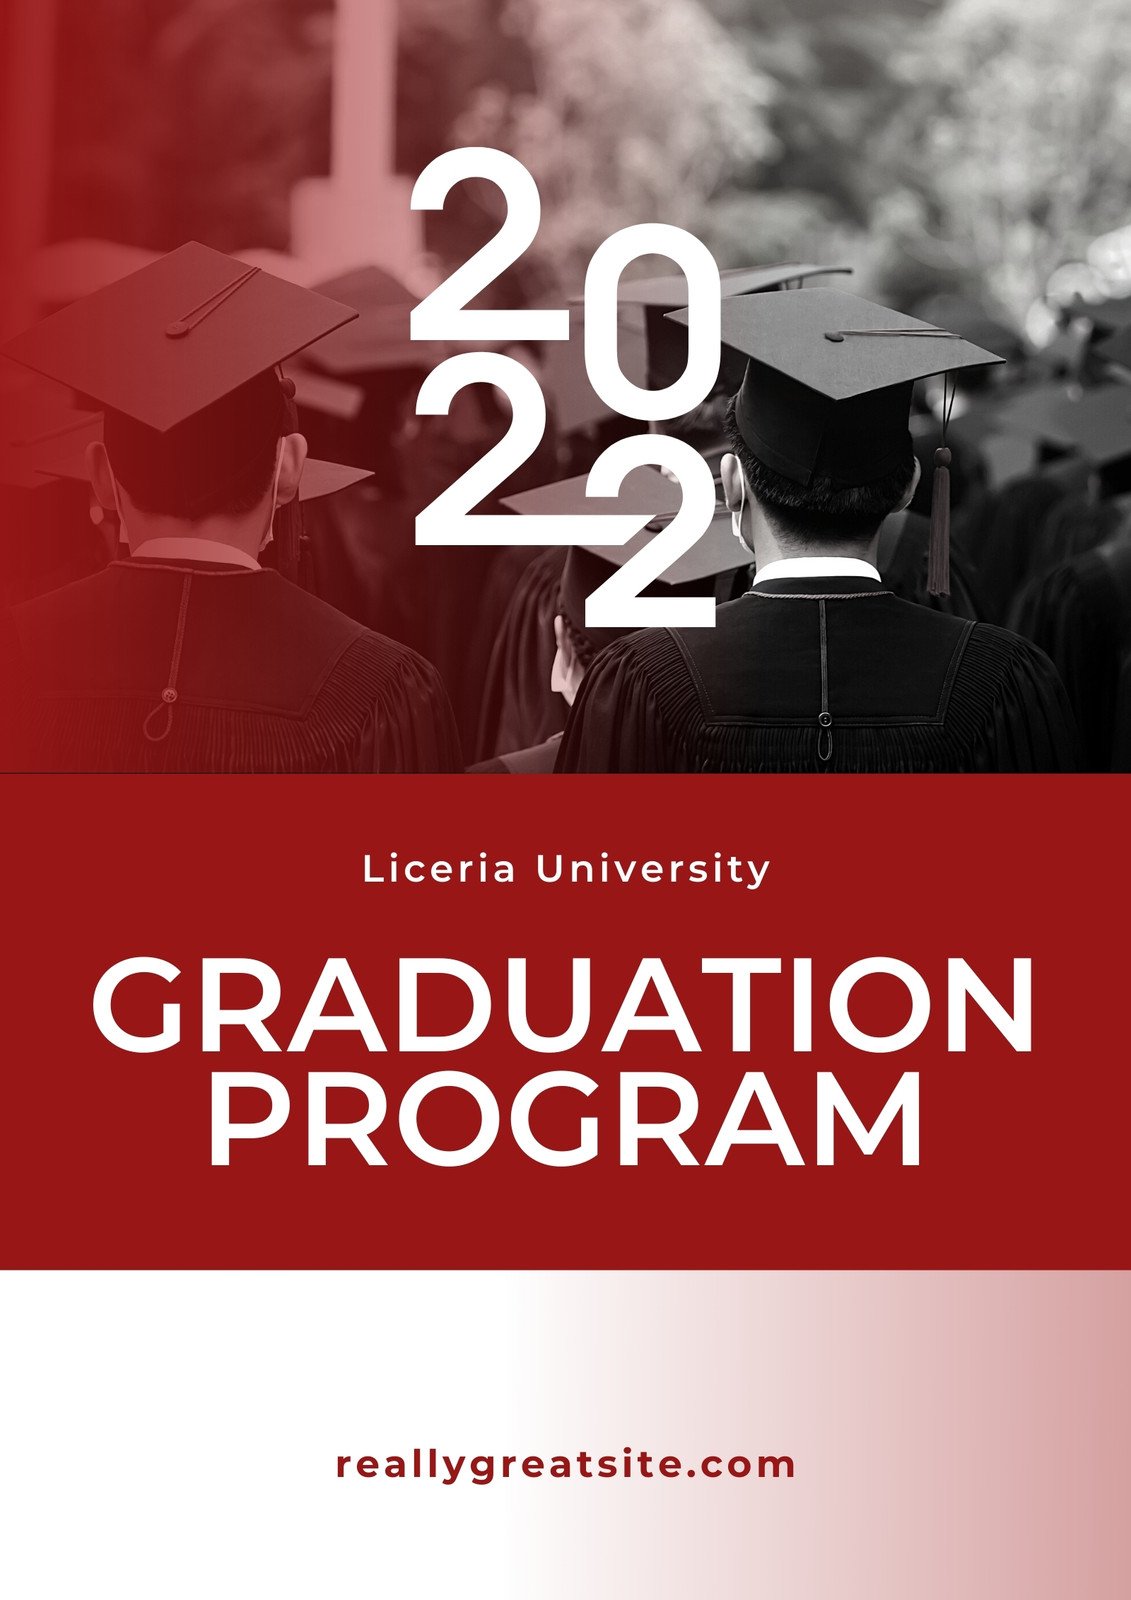 graduation program cover ideas